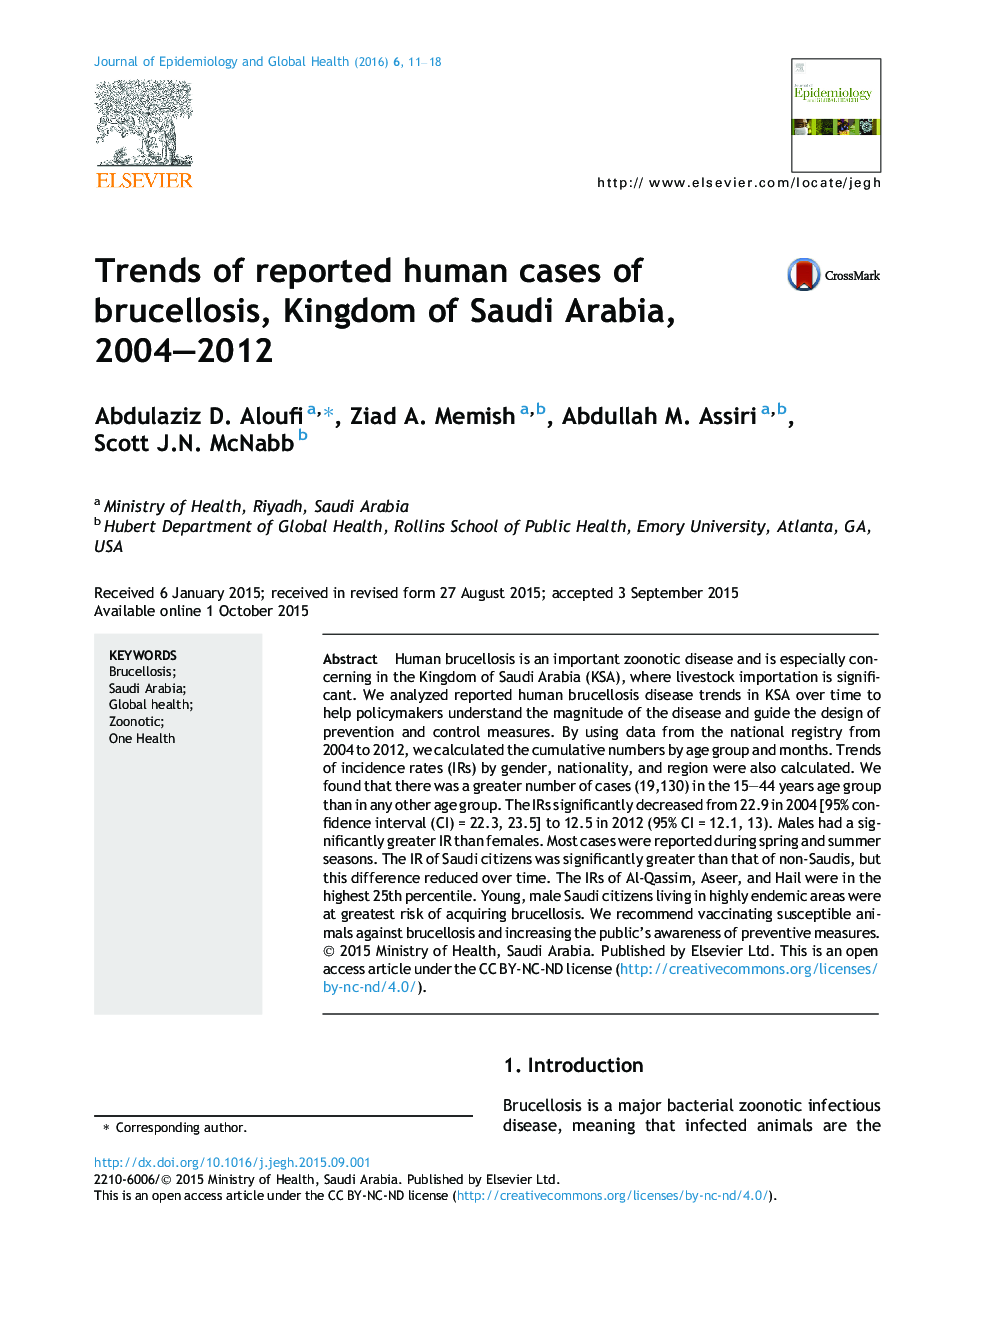 موضوعات داغ موارد انسانی گزارش شده از بروسلوز، پادشاهی عربستان سعودی، 2004-2012